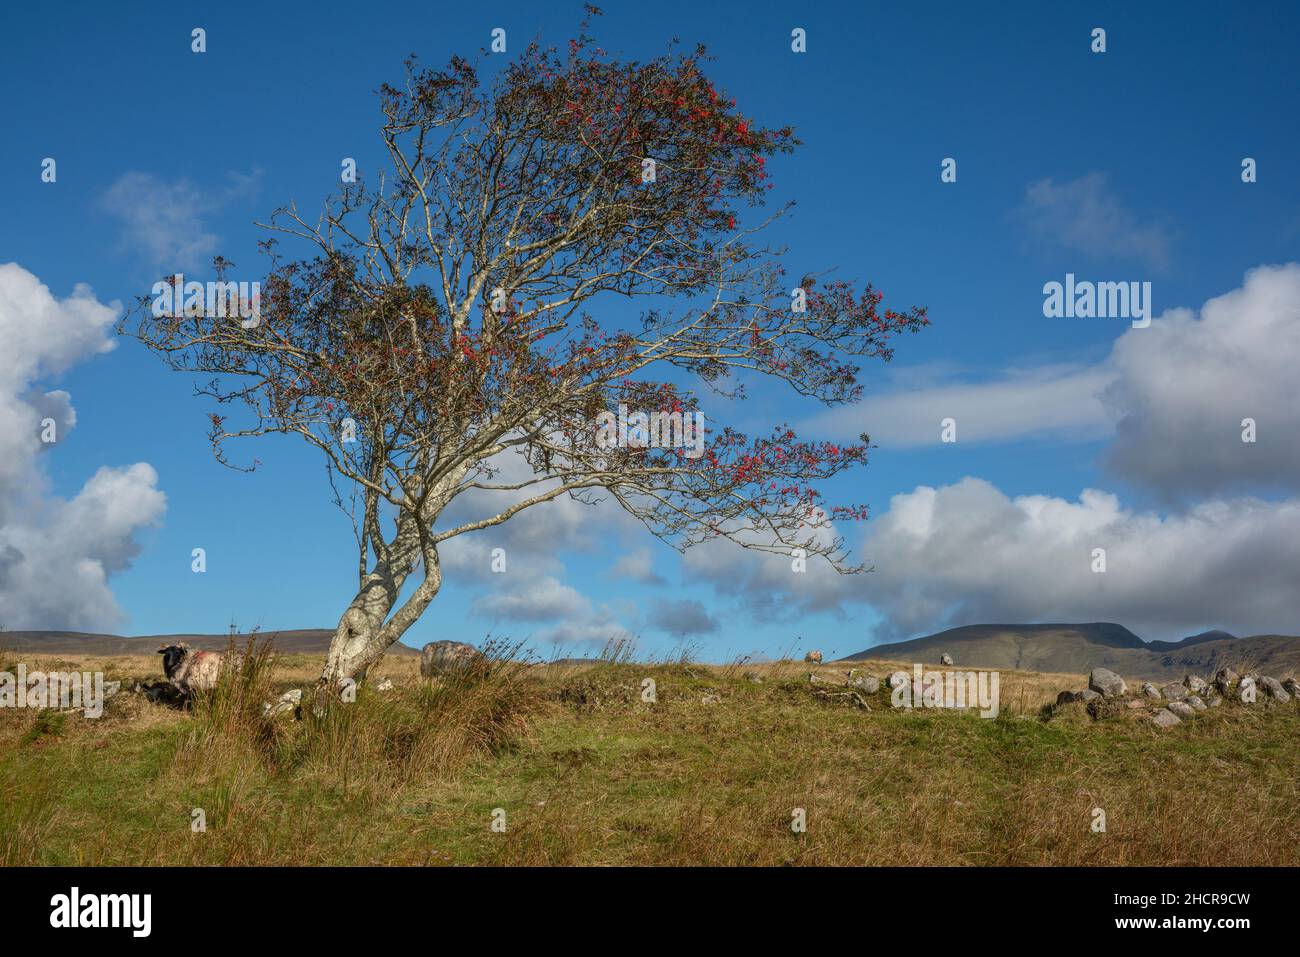 Ein Bergschafe, das an einem einbändigen Baum in der weitläufigen Landschaft der Grafschaft Mayo in Irland grast. Die Sonne scheint mit einigen Wolken. Stockfoto